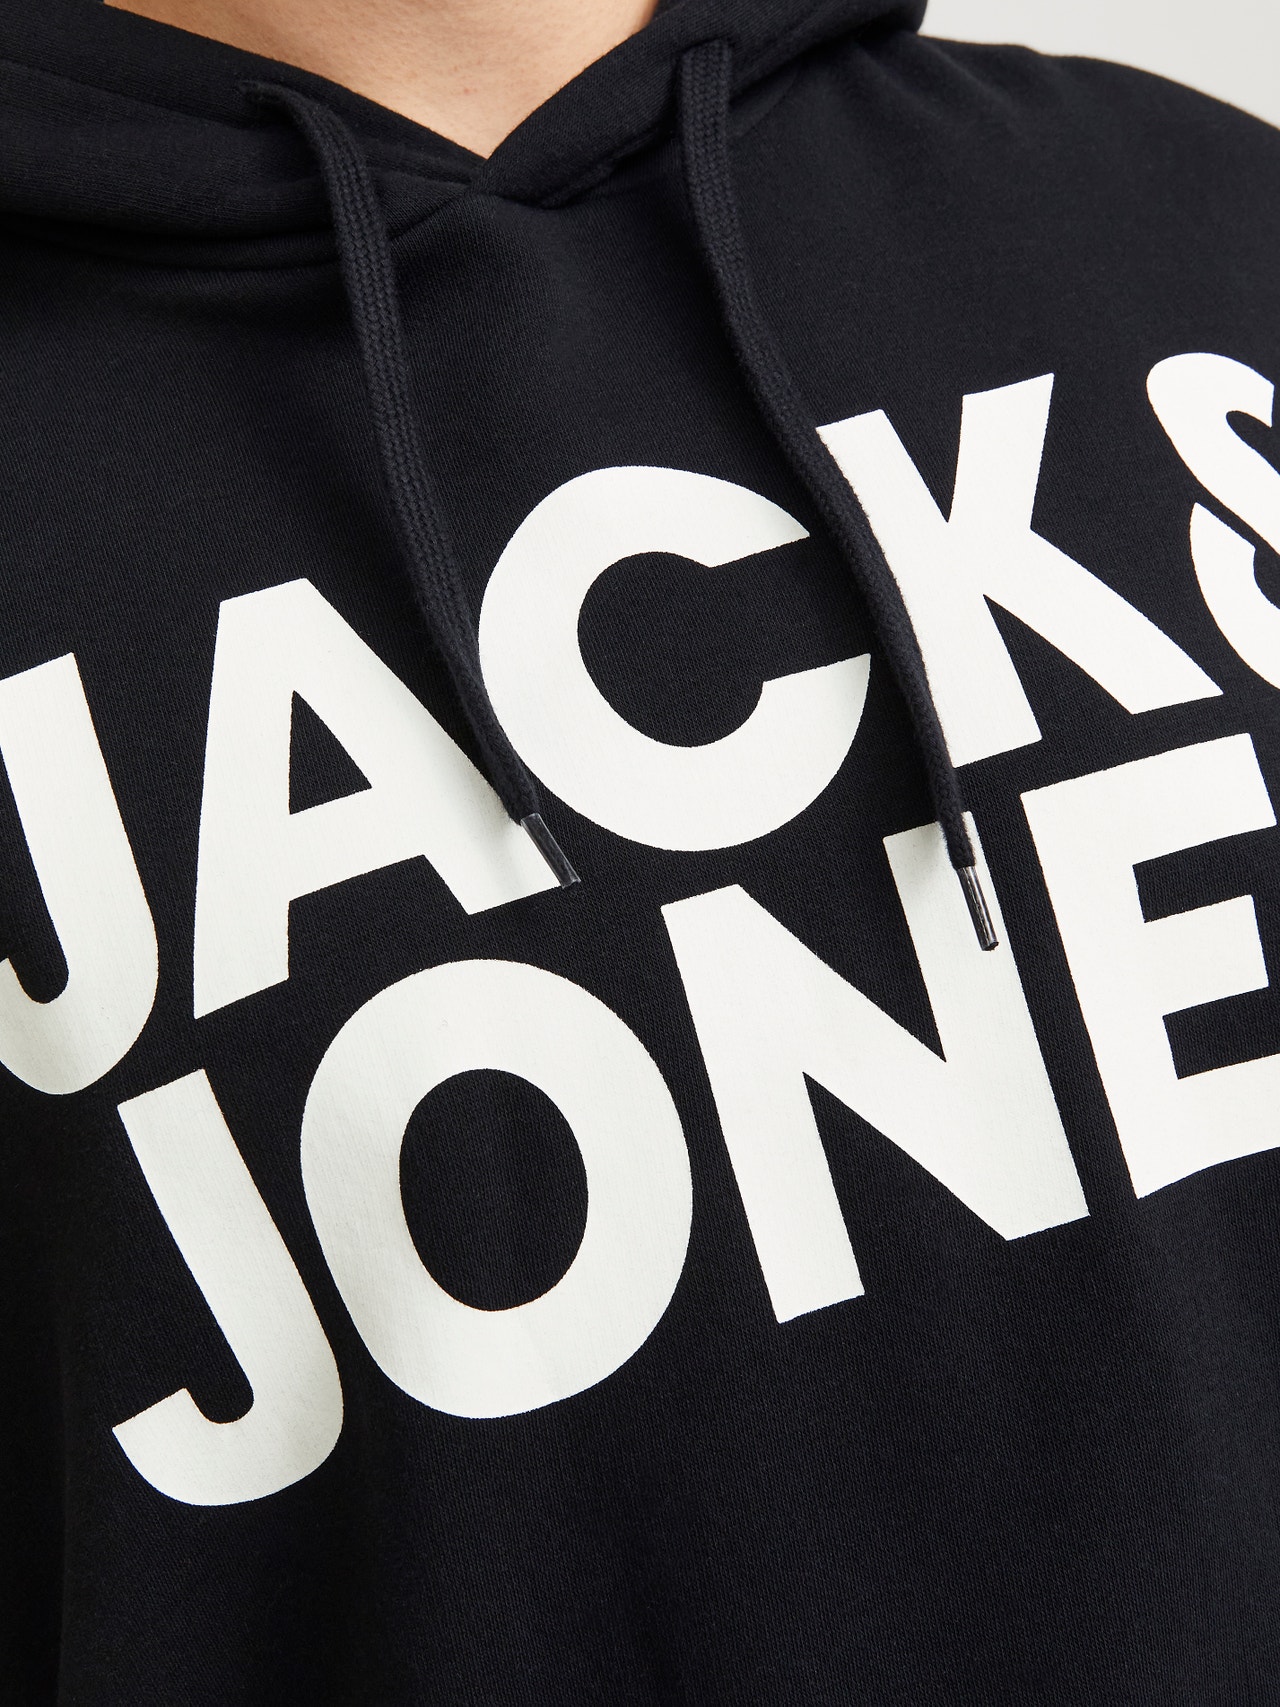 Jack & Jones Plus Logo Kapuutsiga pusa -Black - 12163777